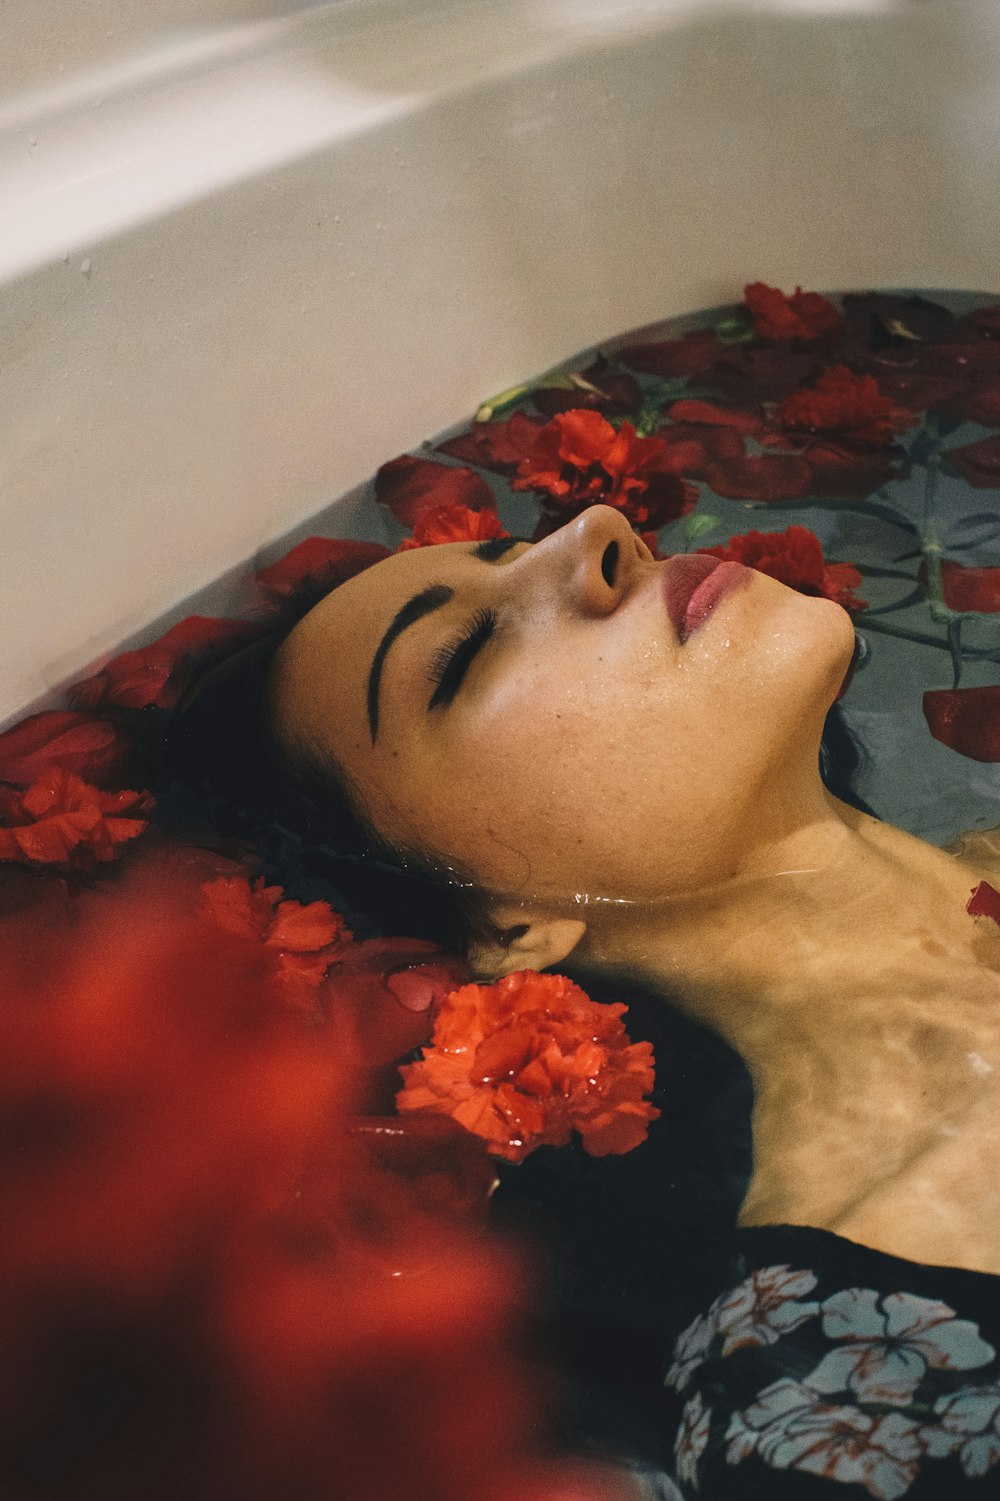 灰色と黒の花柄のドレスを着た女性が赤い花の浴槽に沈む